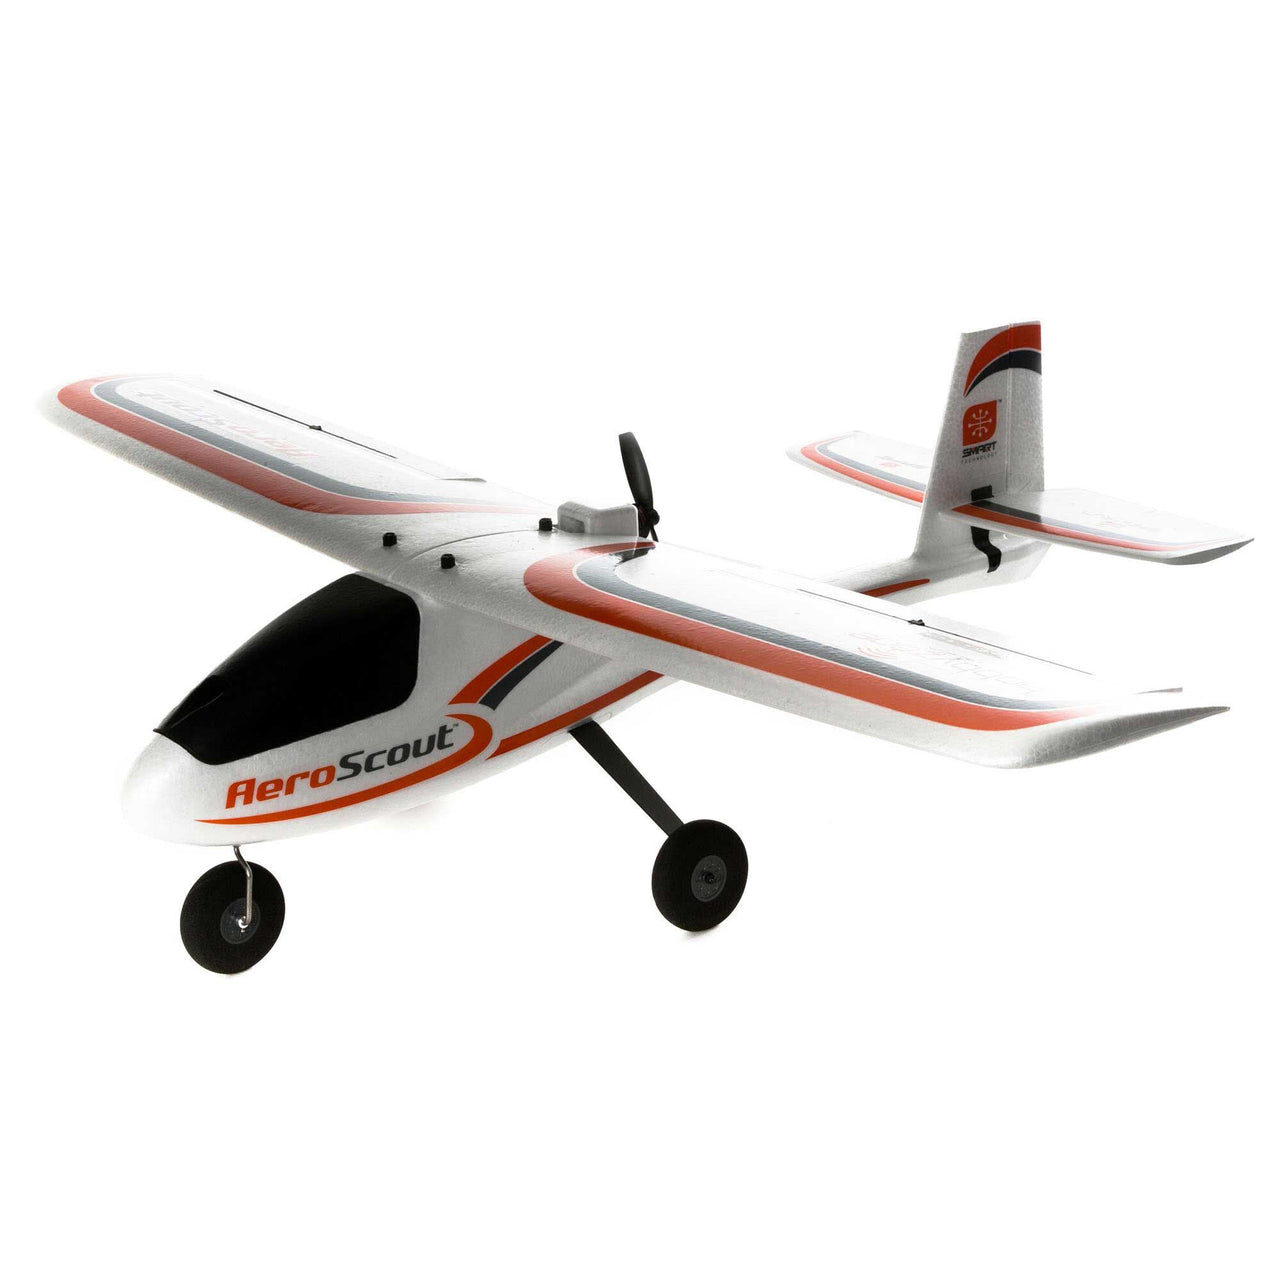 HBZ380001 Hobbyzone AeroScout S 2 1.1m RTF Basic with SAFE